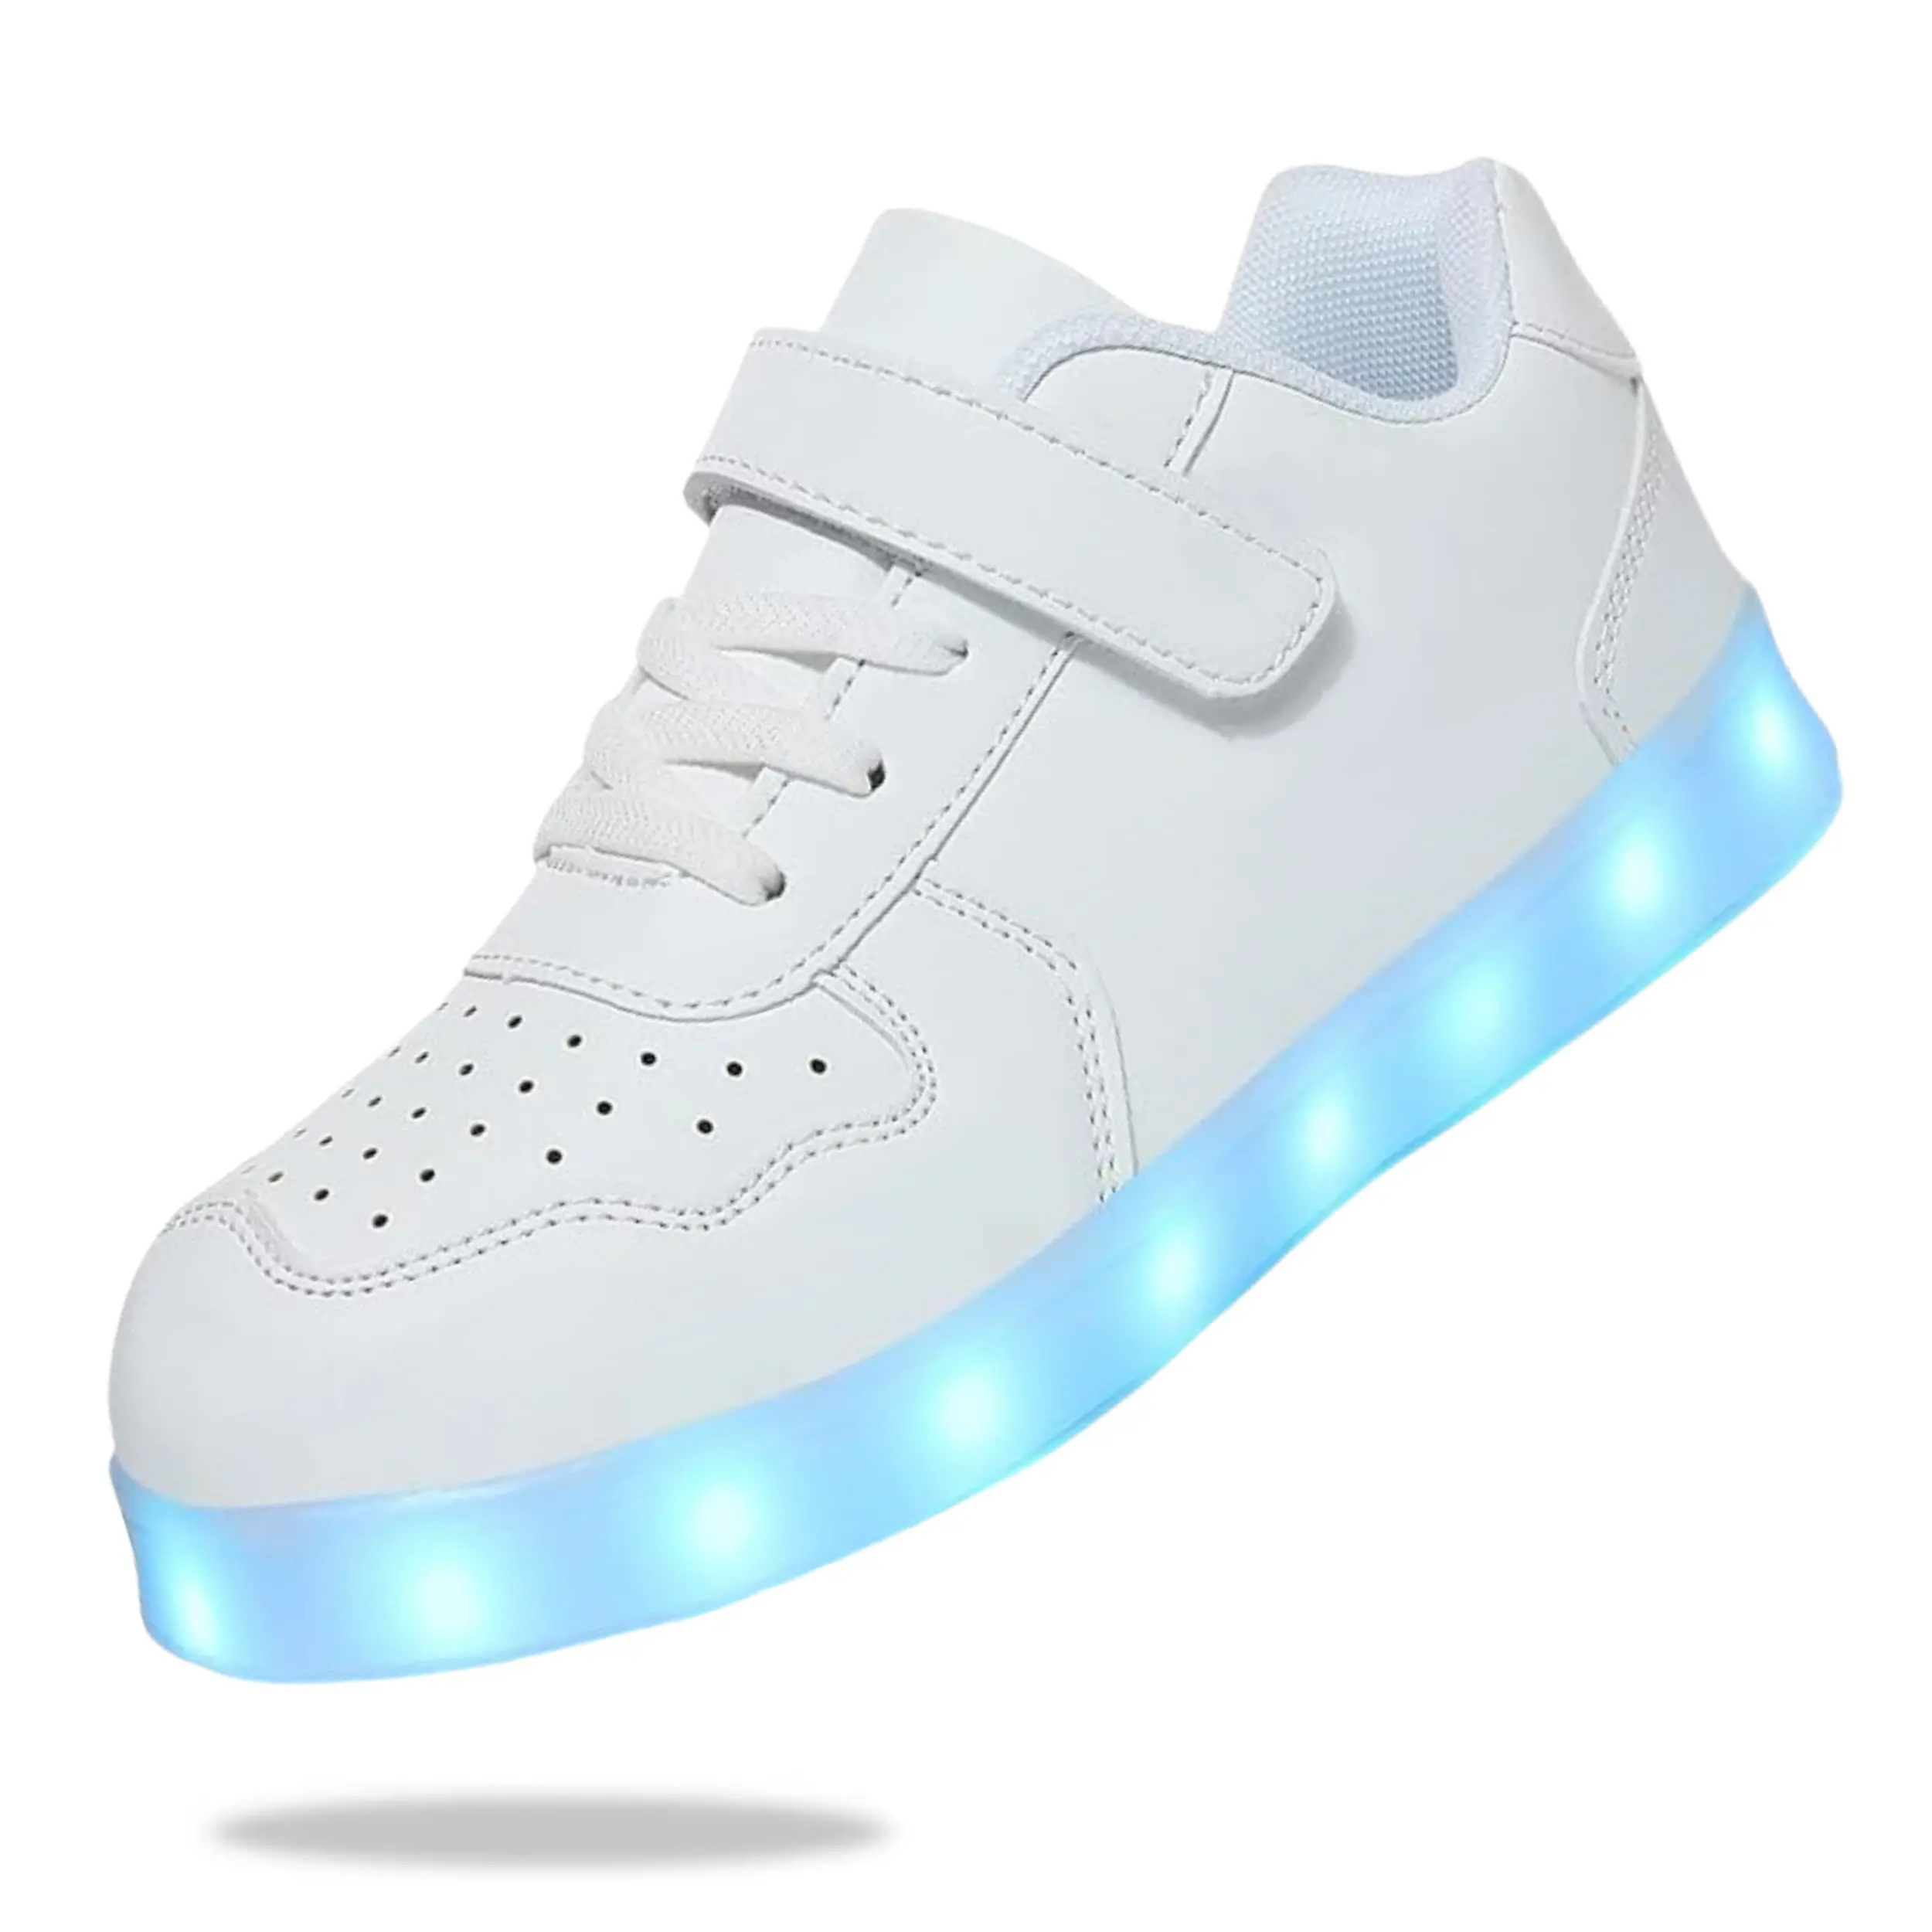 G. Canard cool mode enfants chaussures lumineuses personnalisées Designer garçons et filles en plein air respirant SportsShoes anti-dérapant enfant chaussures